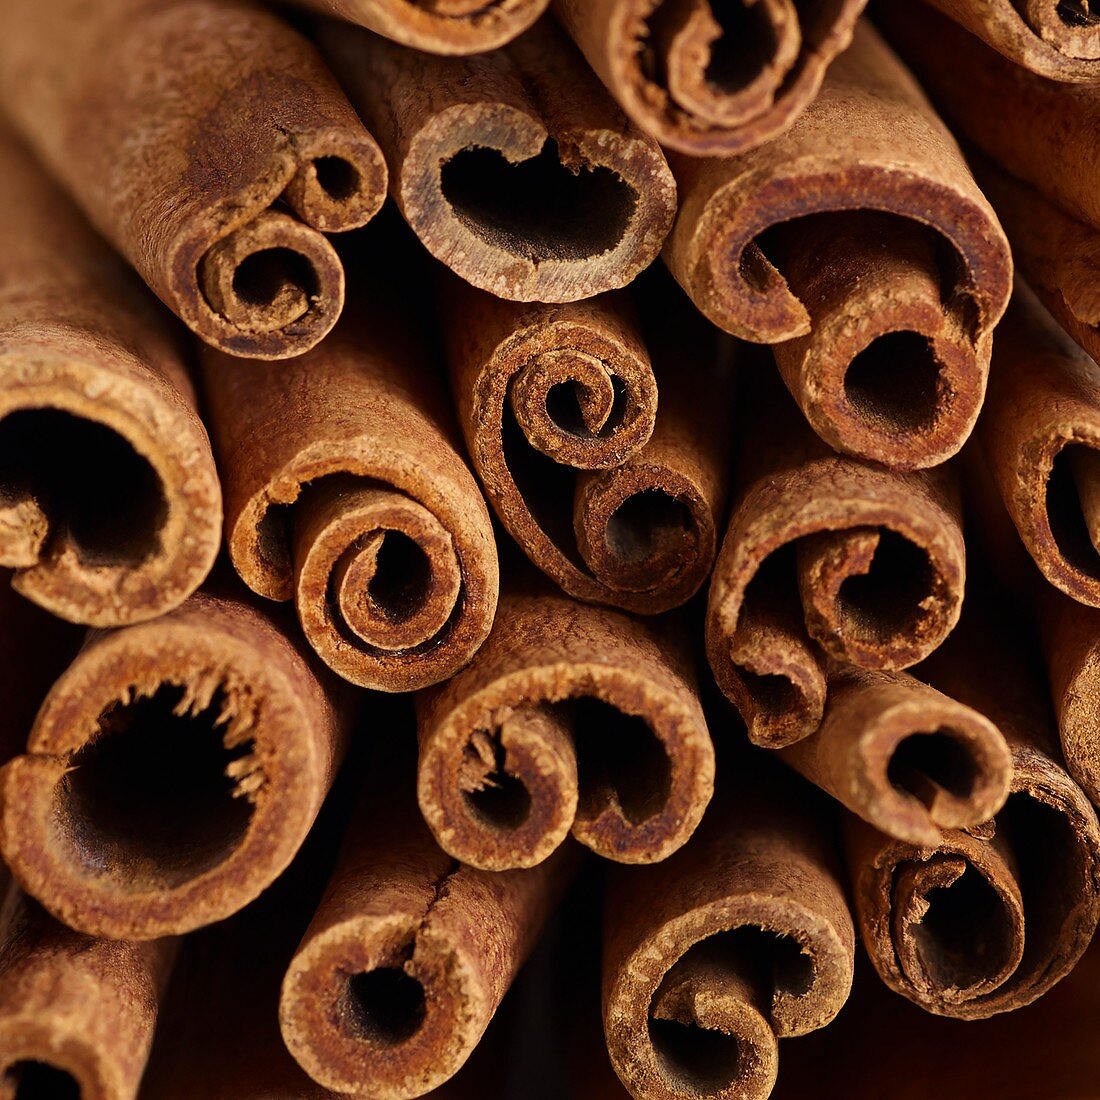 Cinnamon sticks in bundle